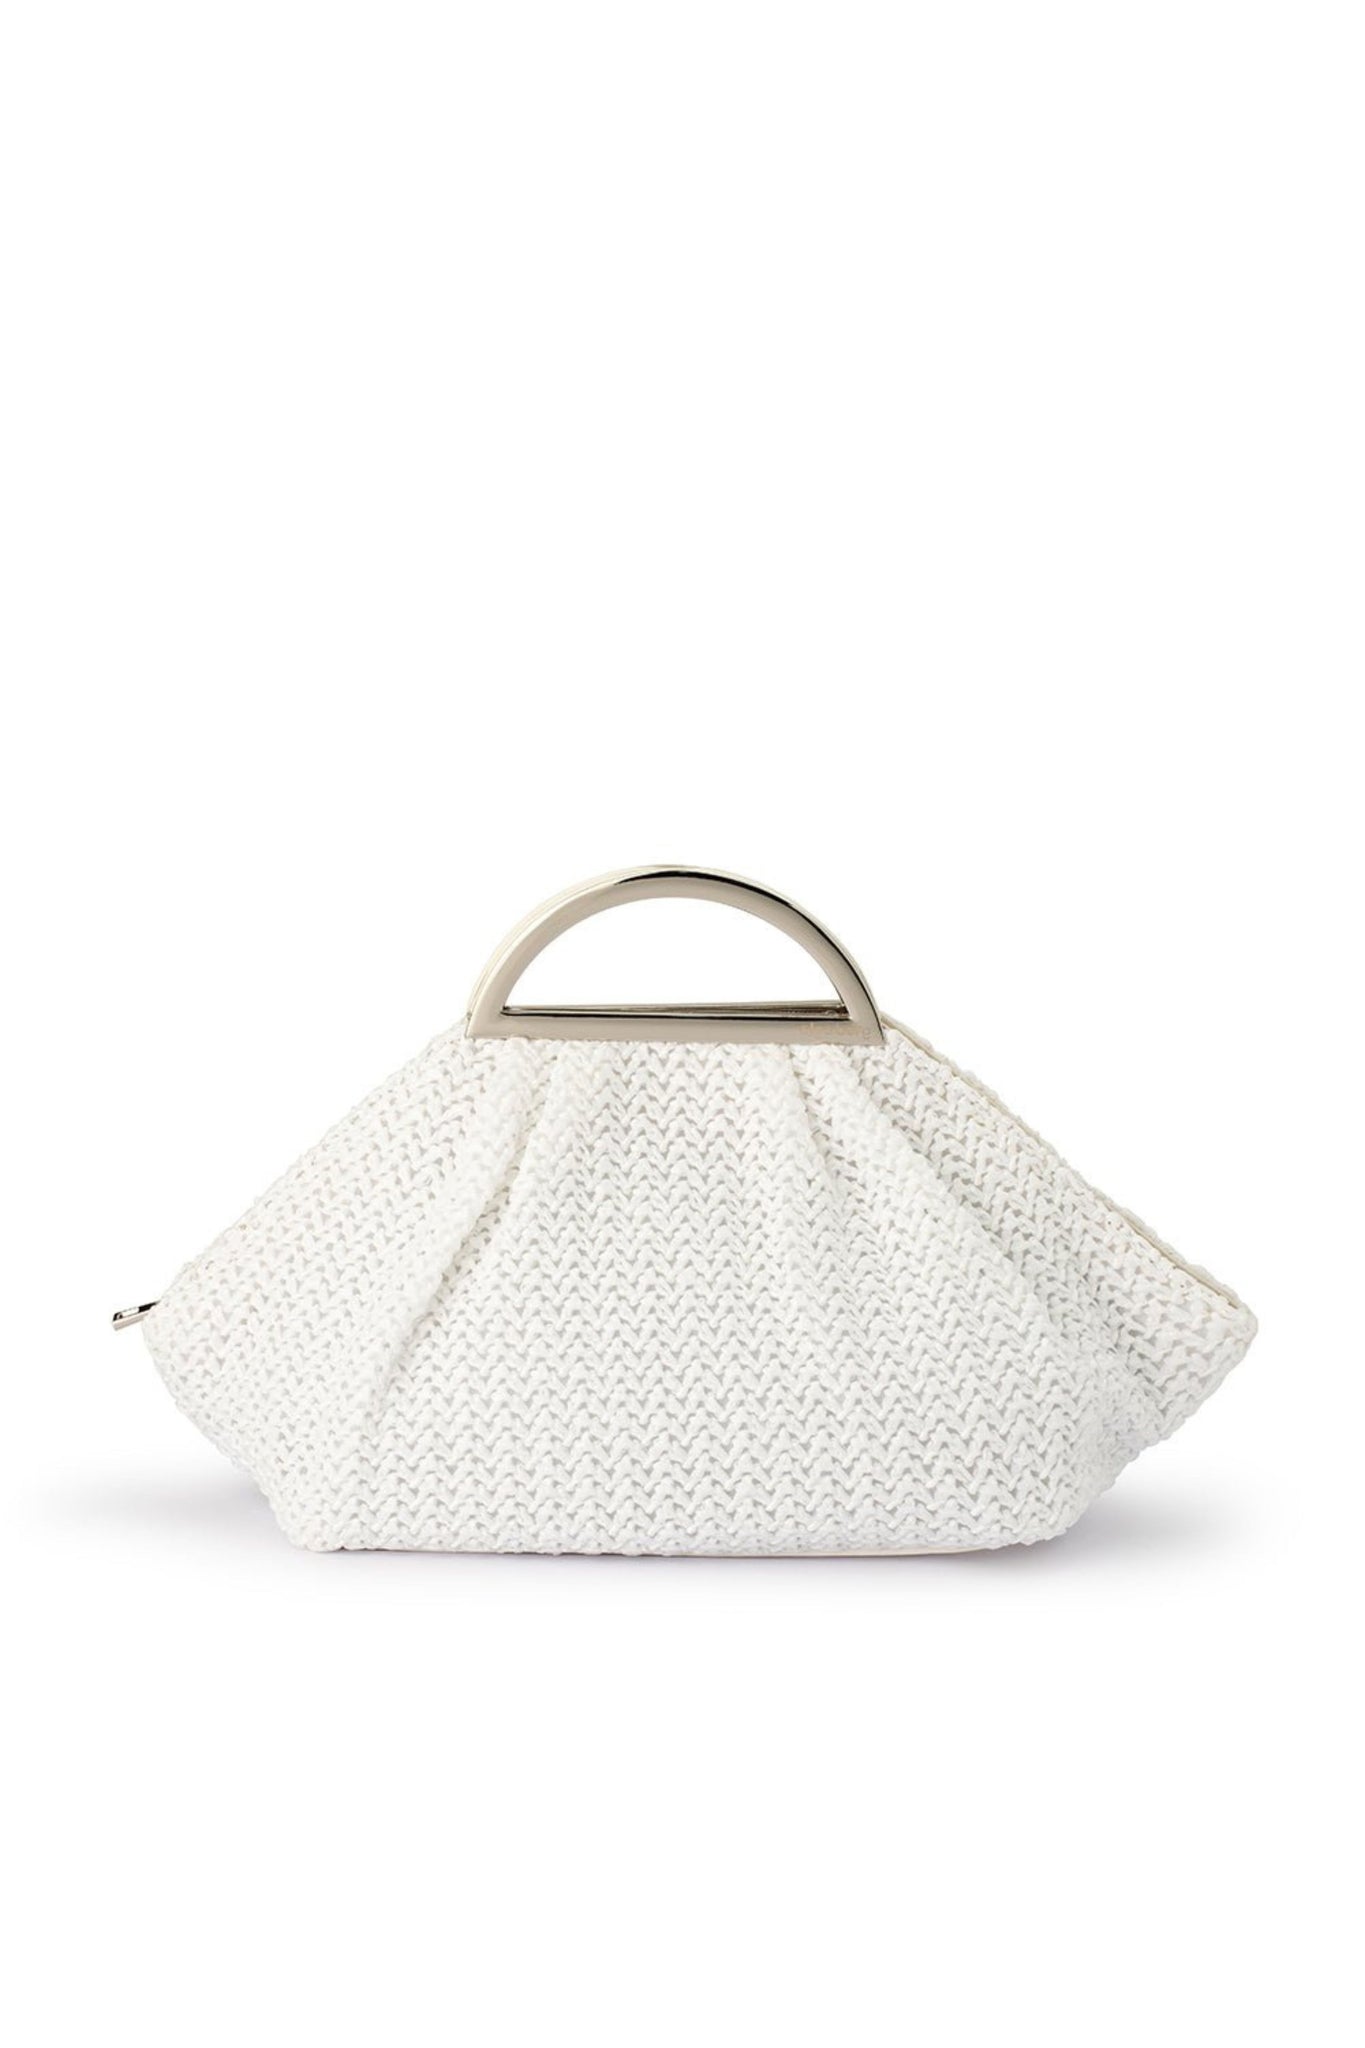 Adriana Woven Handle Bag - White